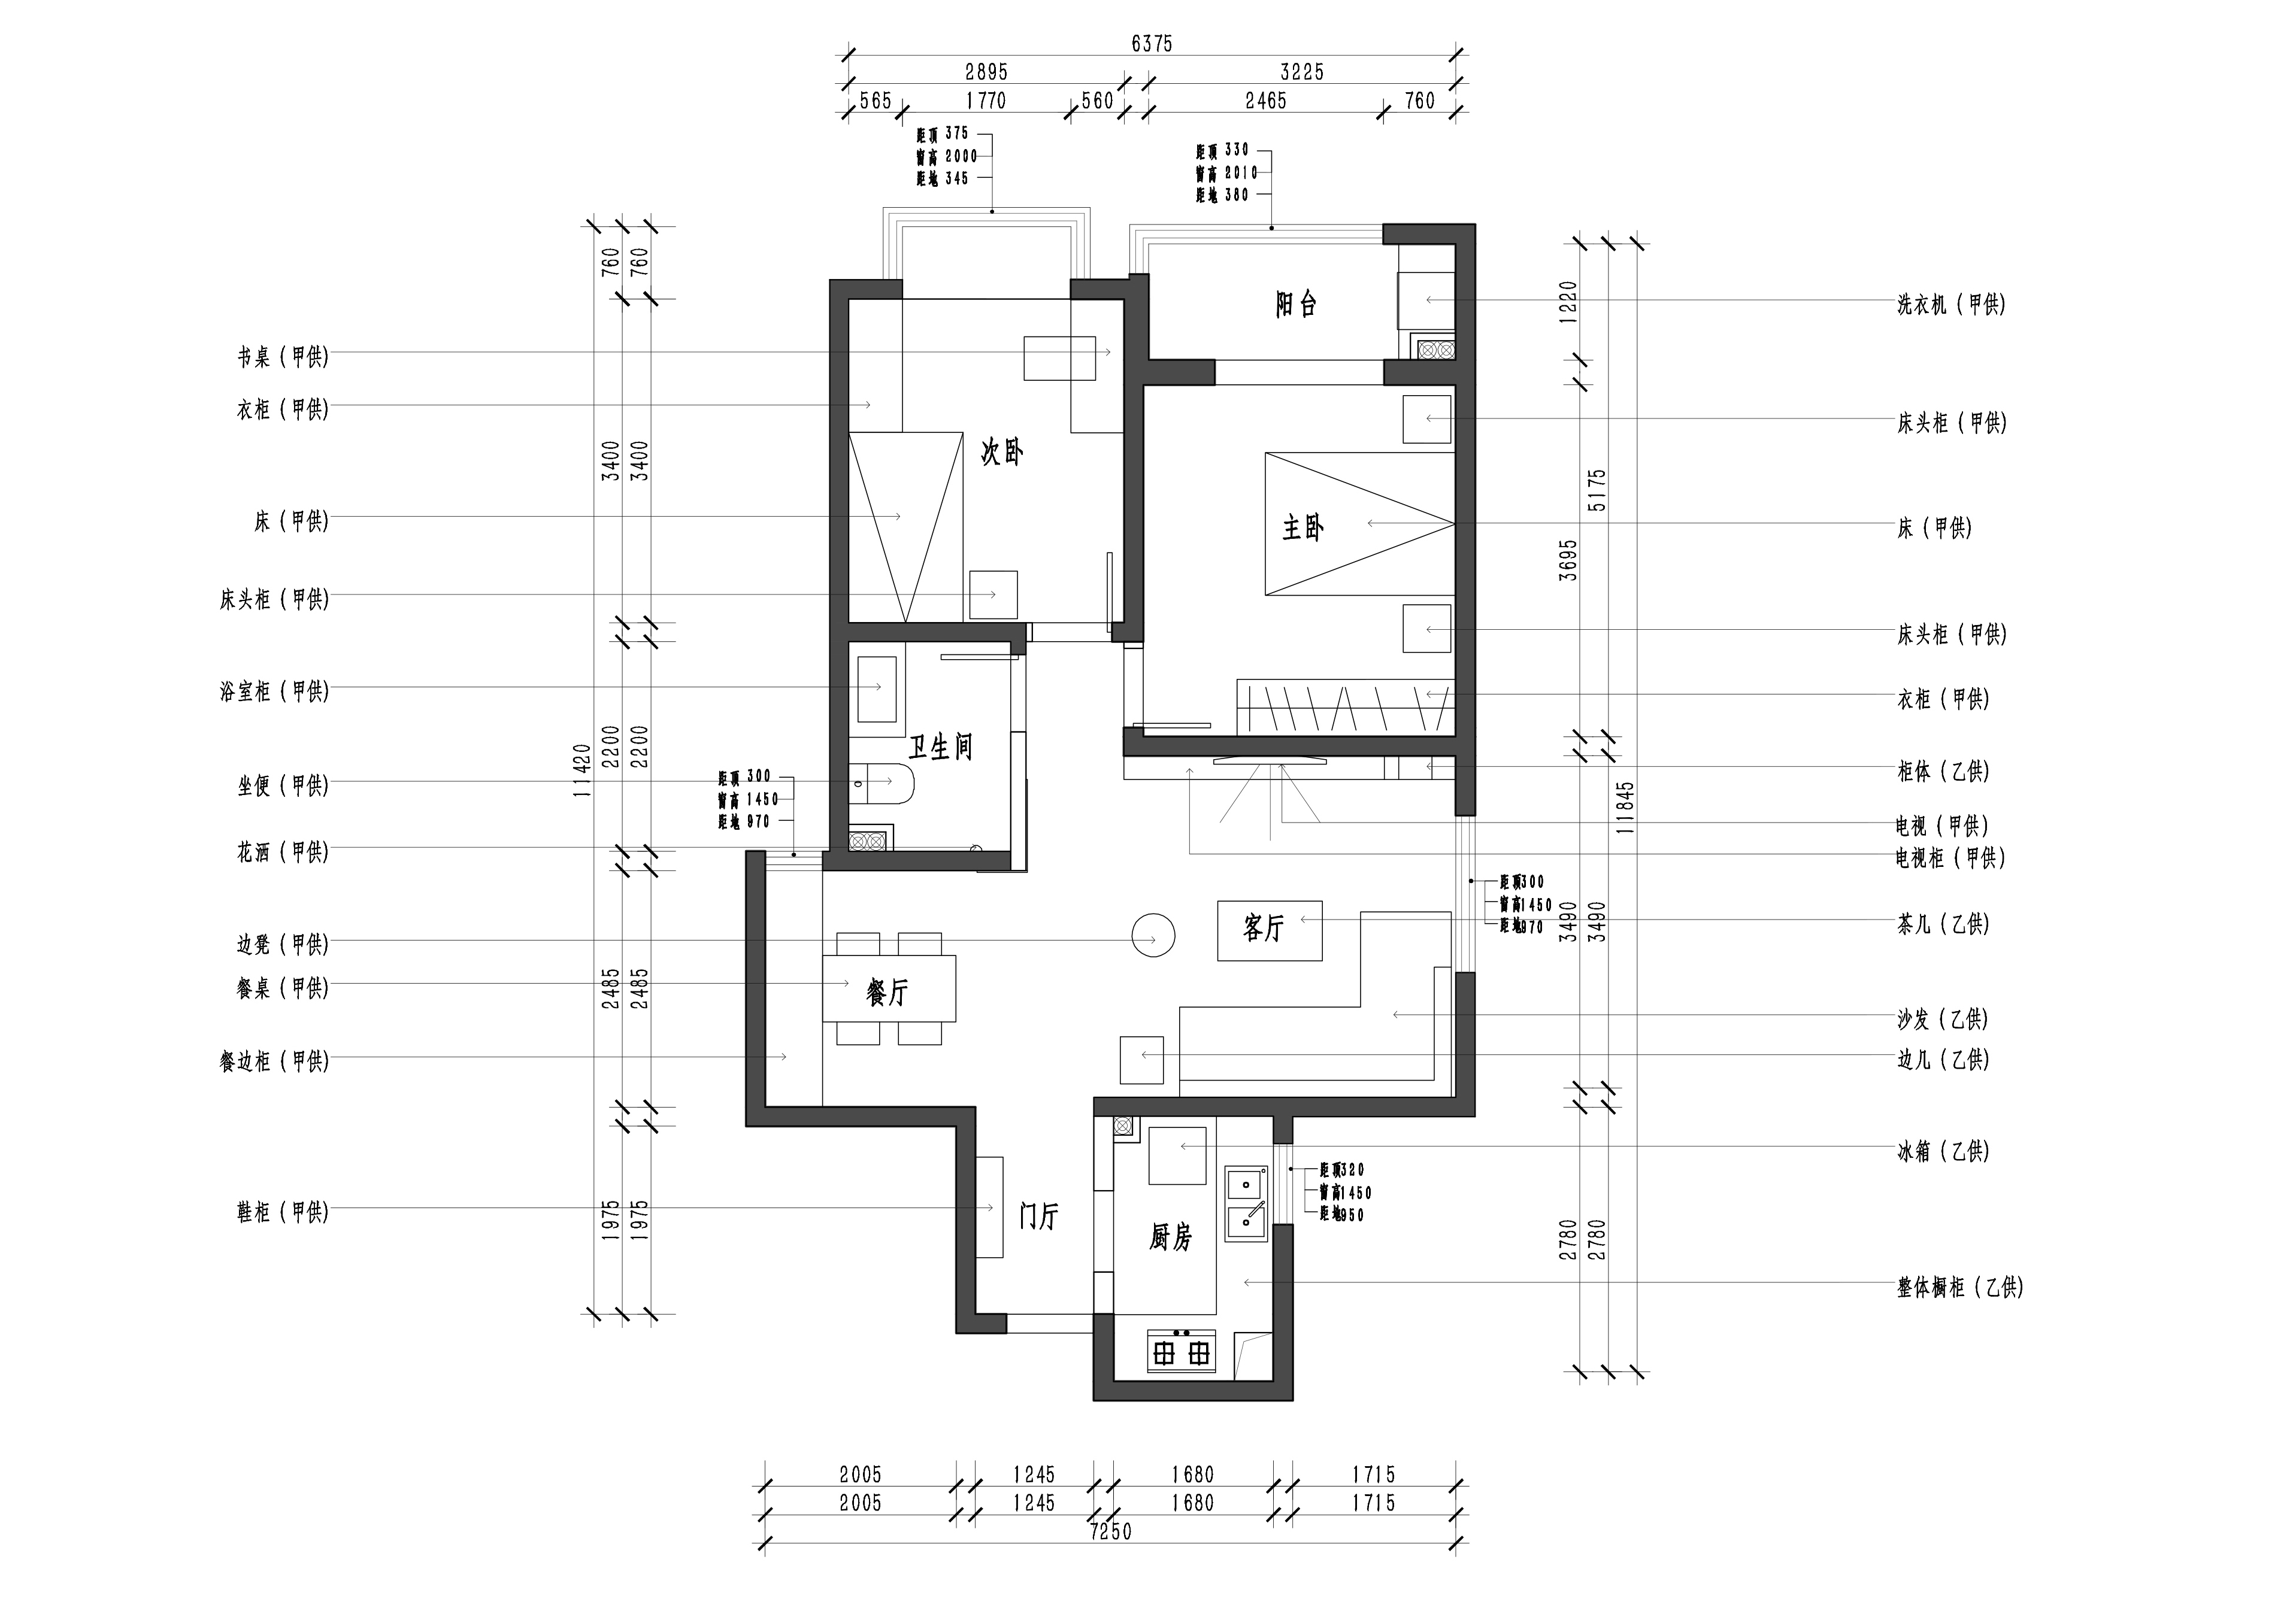 现代二居室91.8平方米家装案例-成都装修网-家装保姆-罗小红成都家装设计